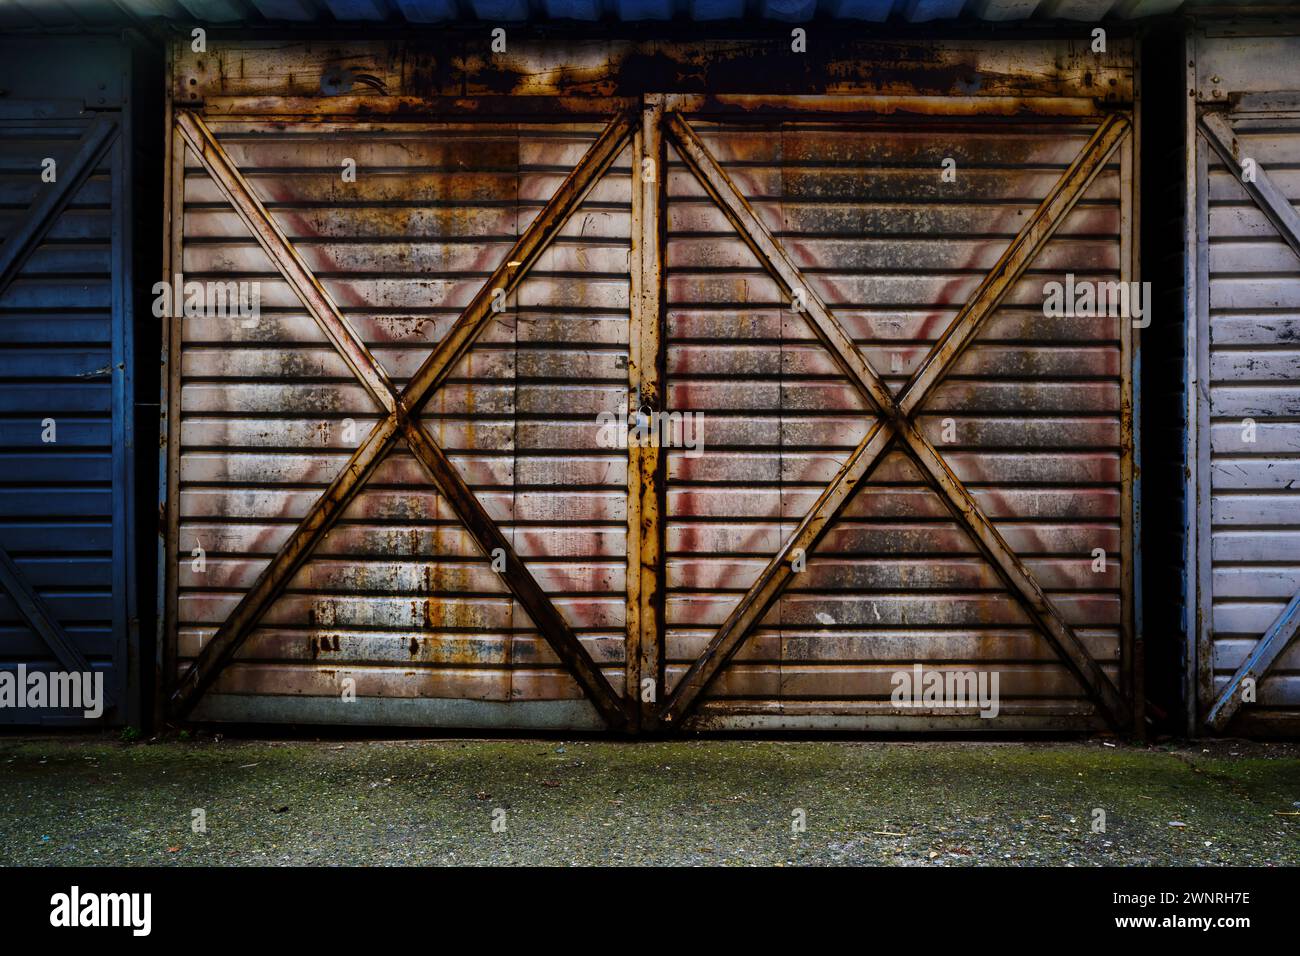 Vieille porte de garage métallique en tôle ondulée verrouillée avec cadenas, surface usée et rouillée Banque D'Images